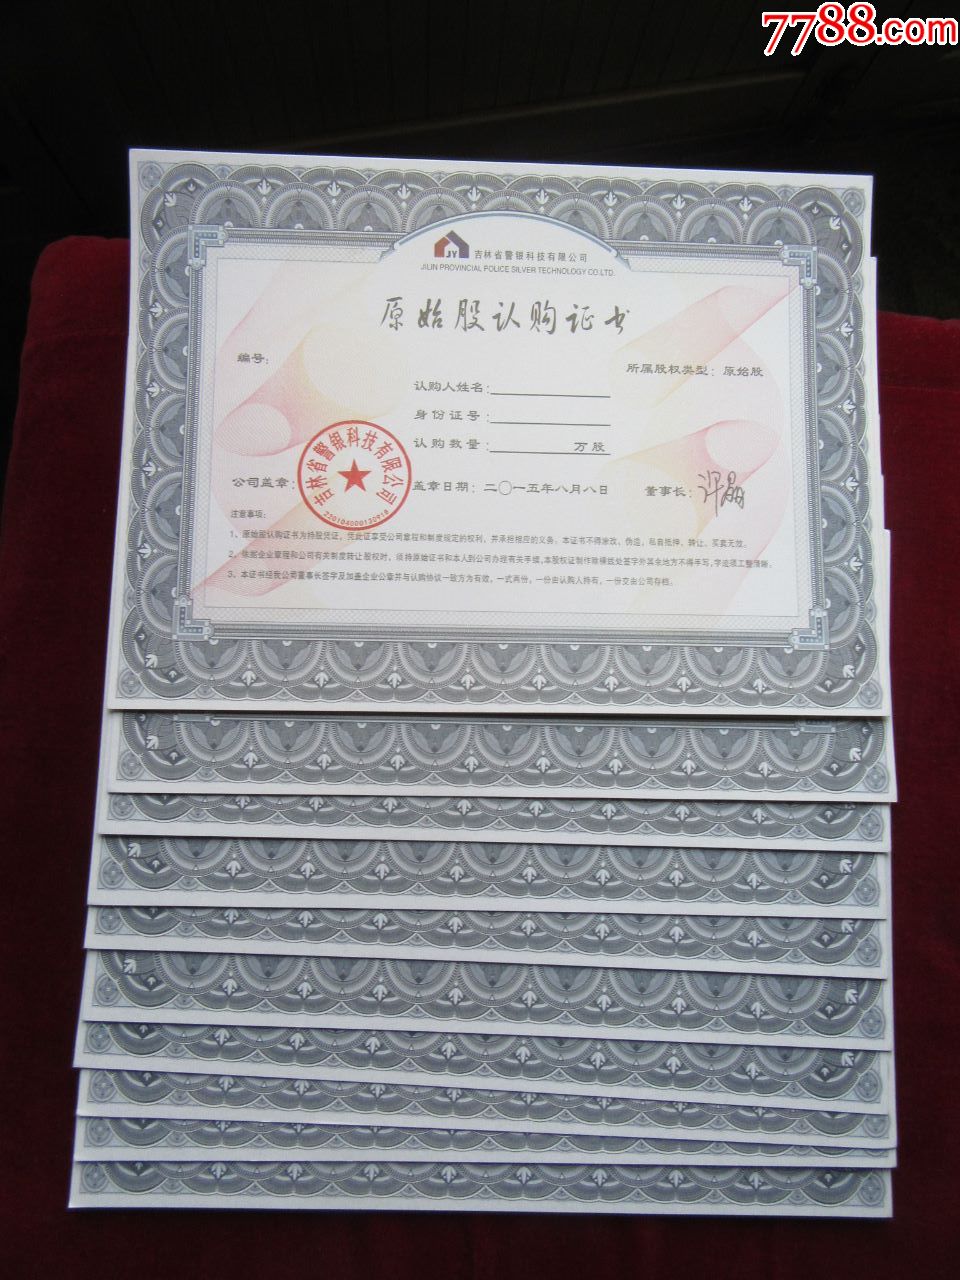 吉林省警银科技有限公司原始股认购证书